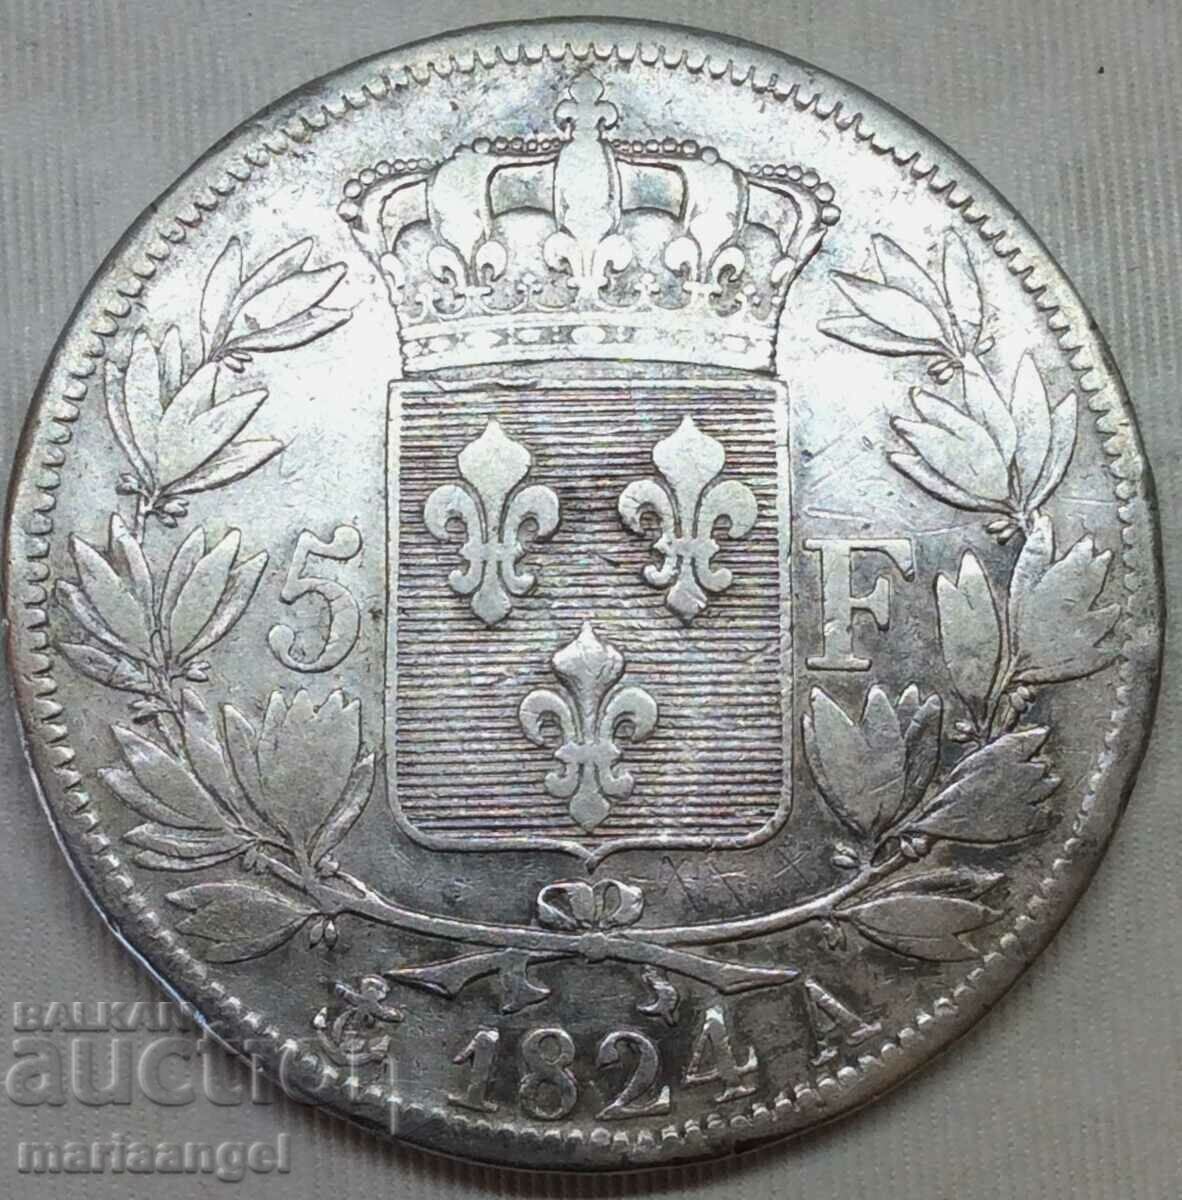 5 Francs 1824 France A - Paris - Rare Mint - Silver